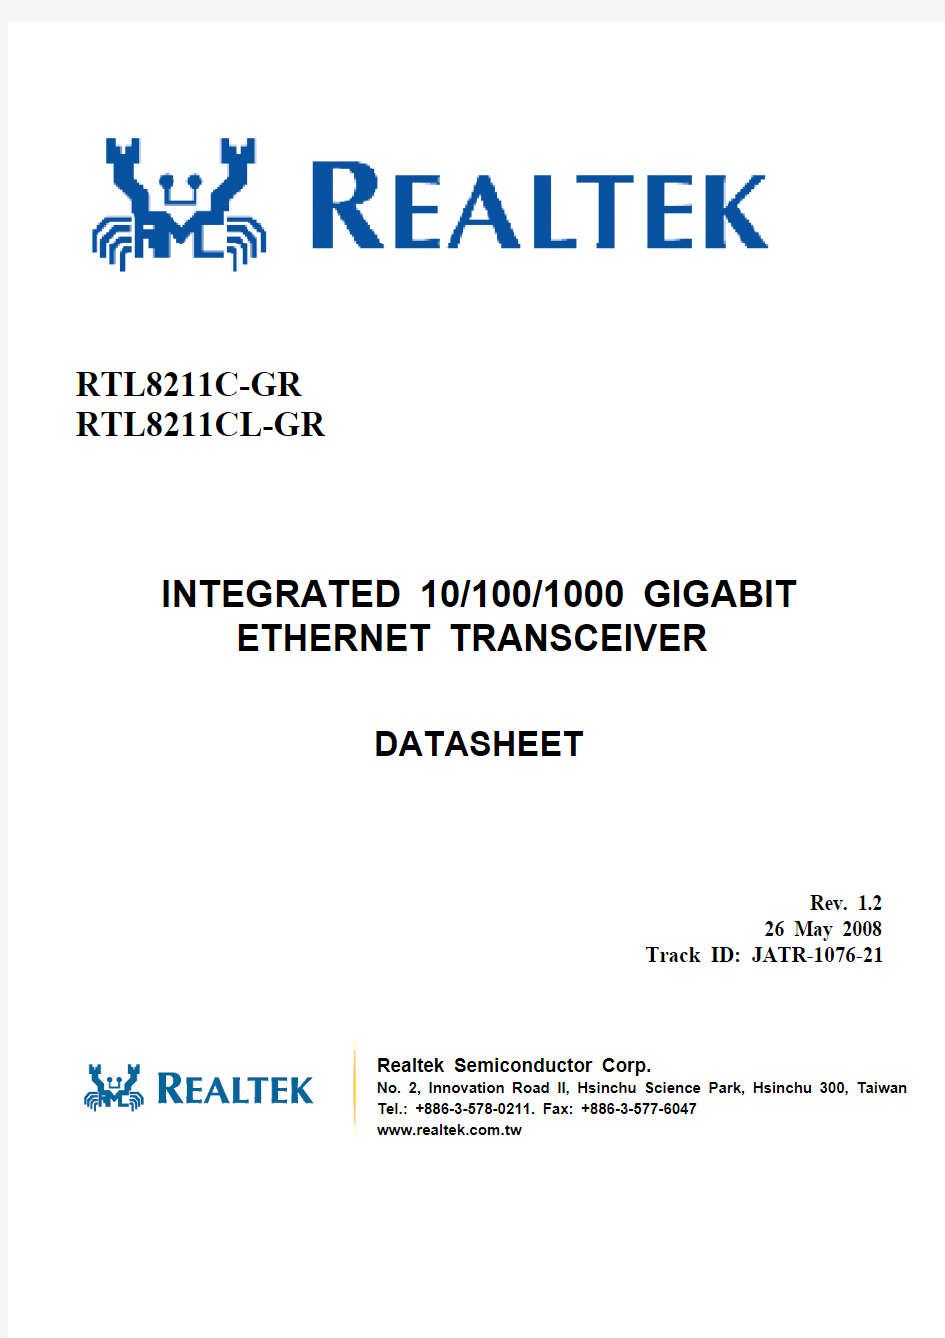 RTL8211C(L)_Integrated 10,100,1000 gigabit ethernet transceiver